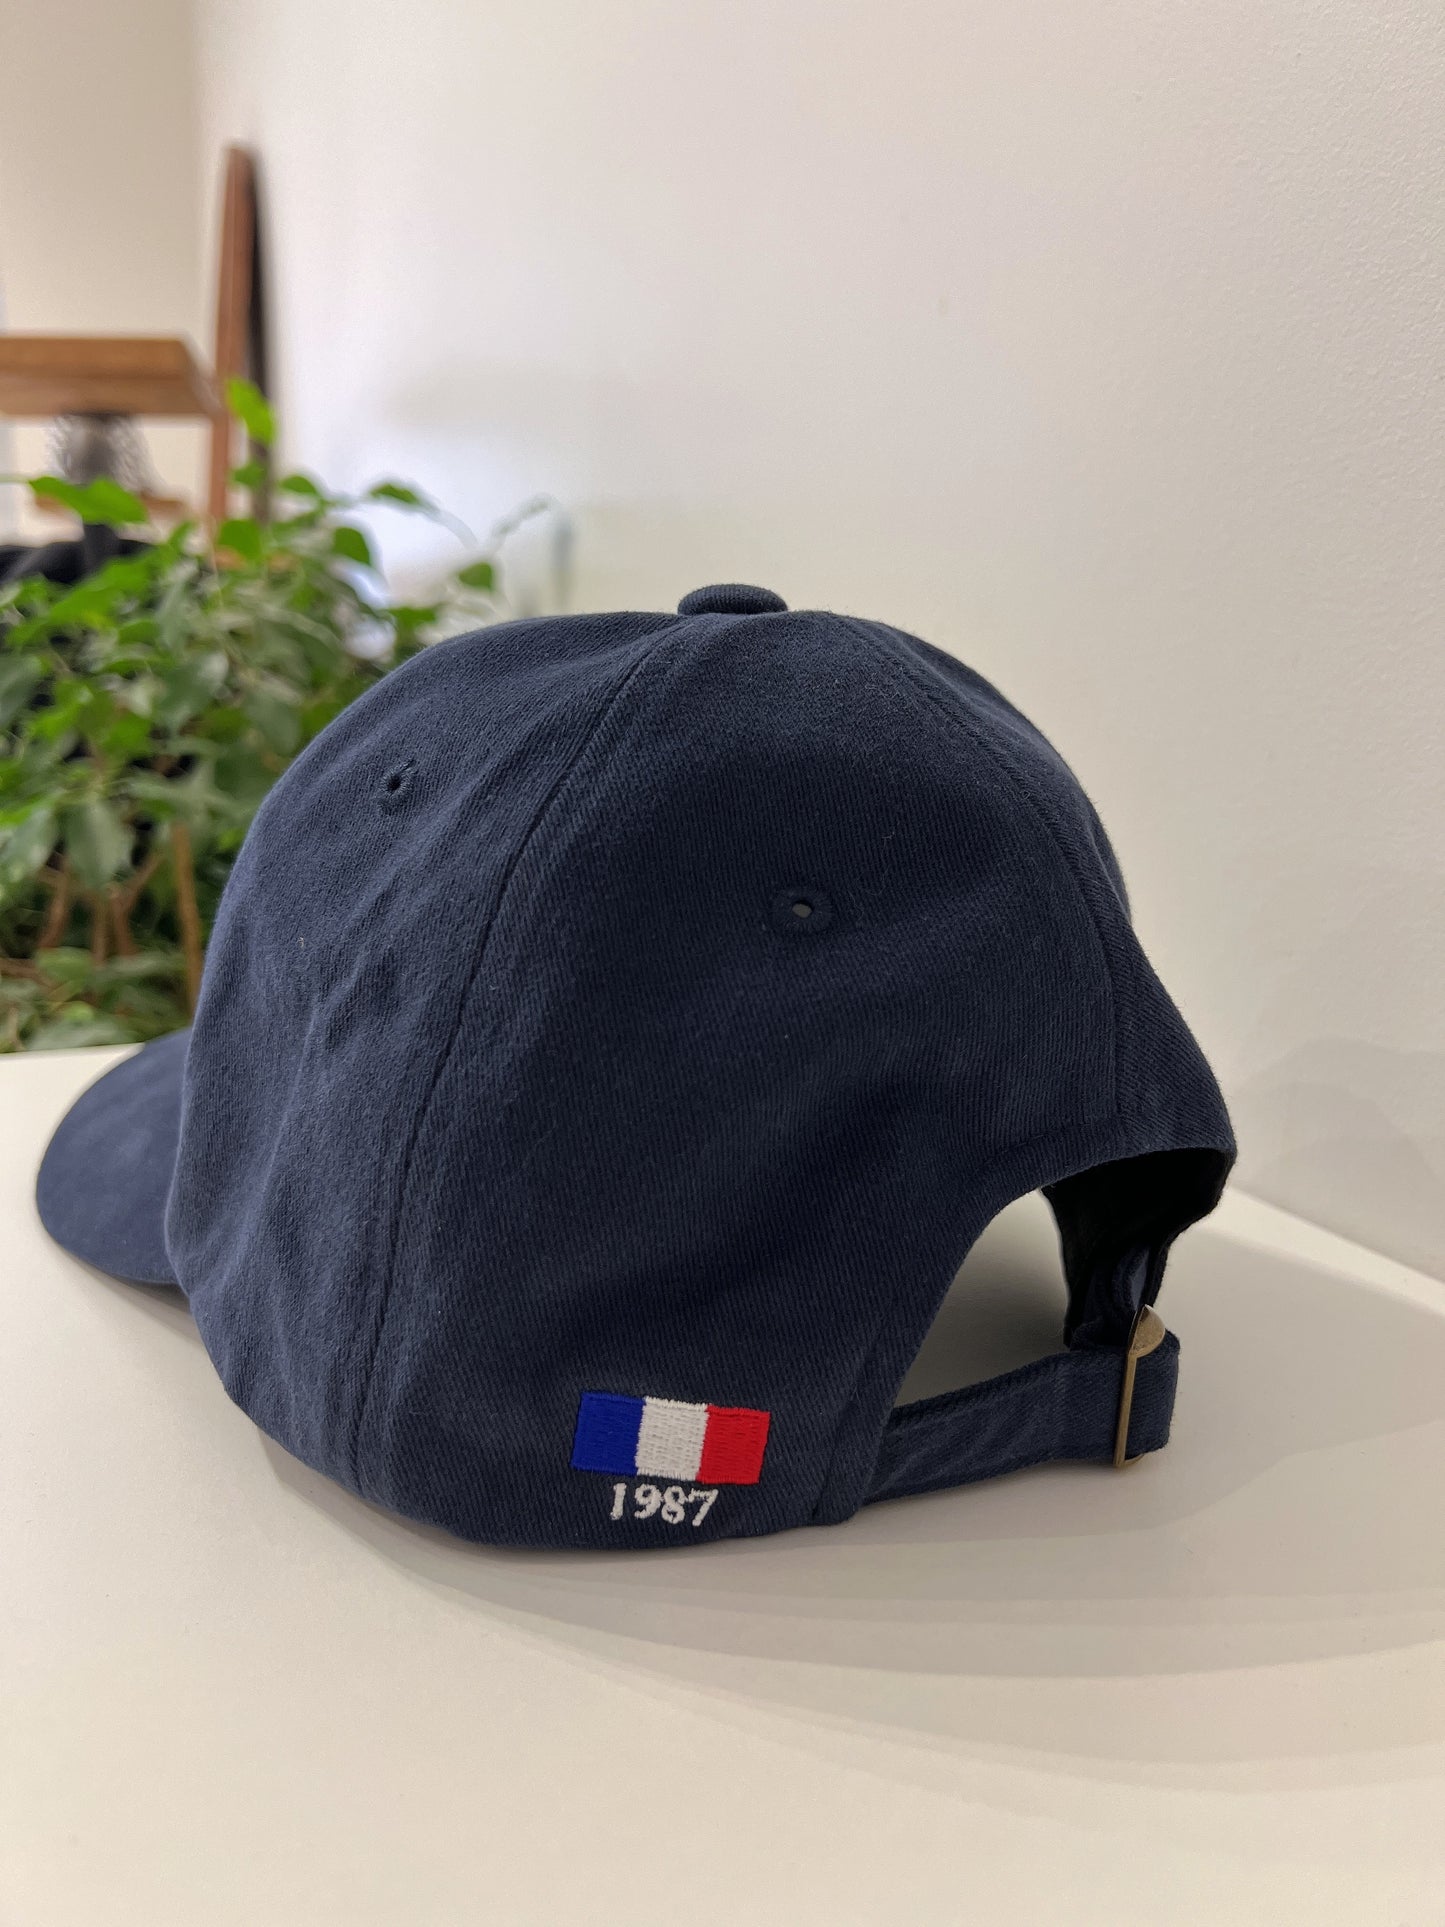 LANDY Paris ball cap